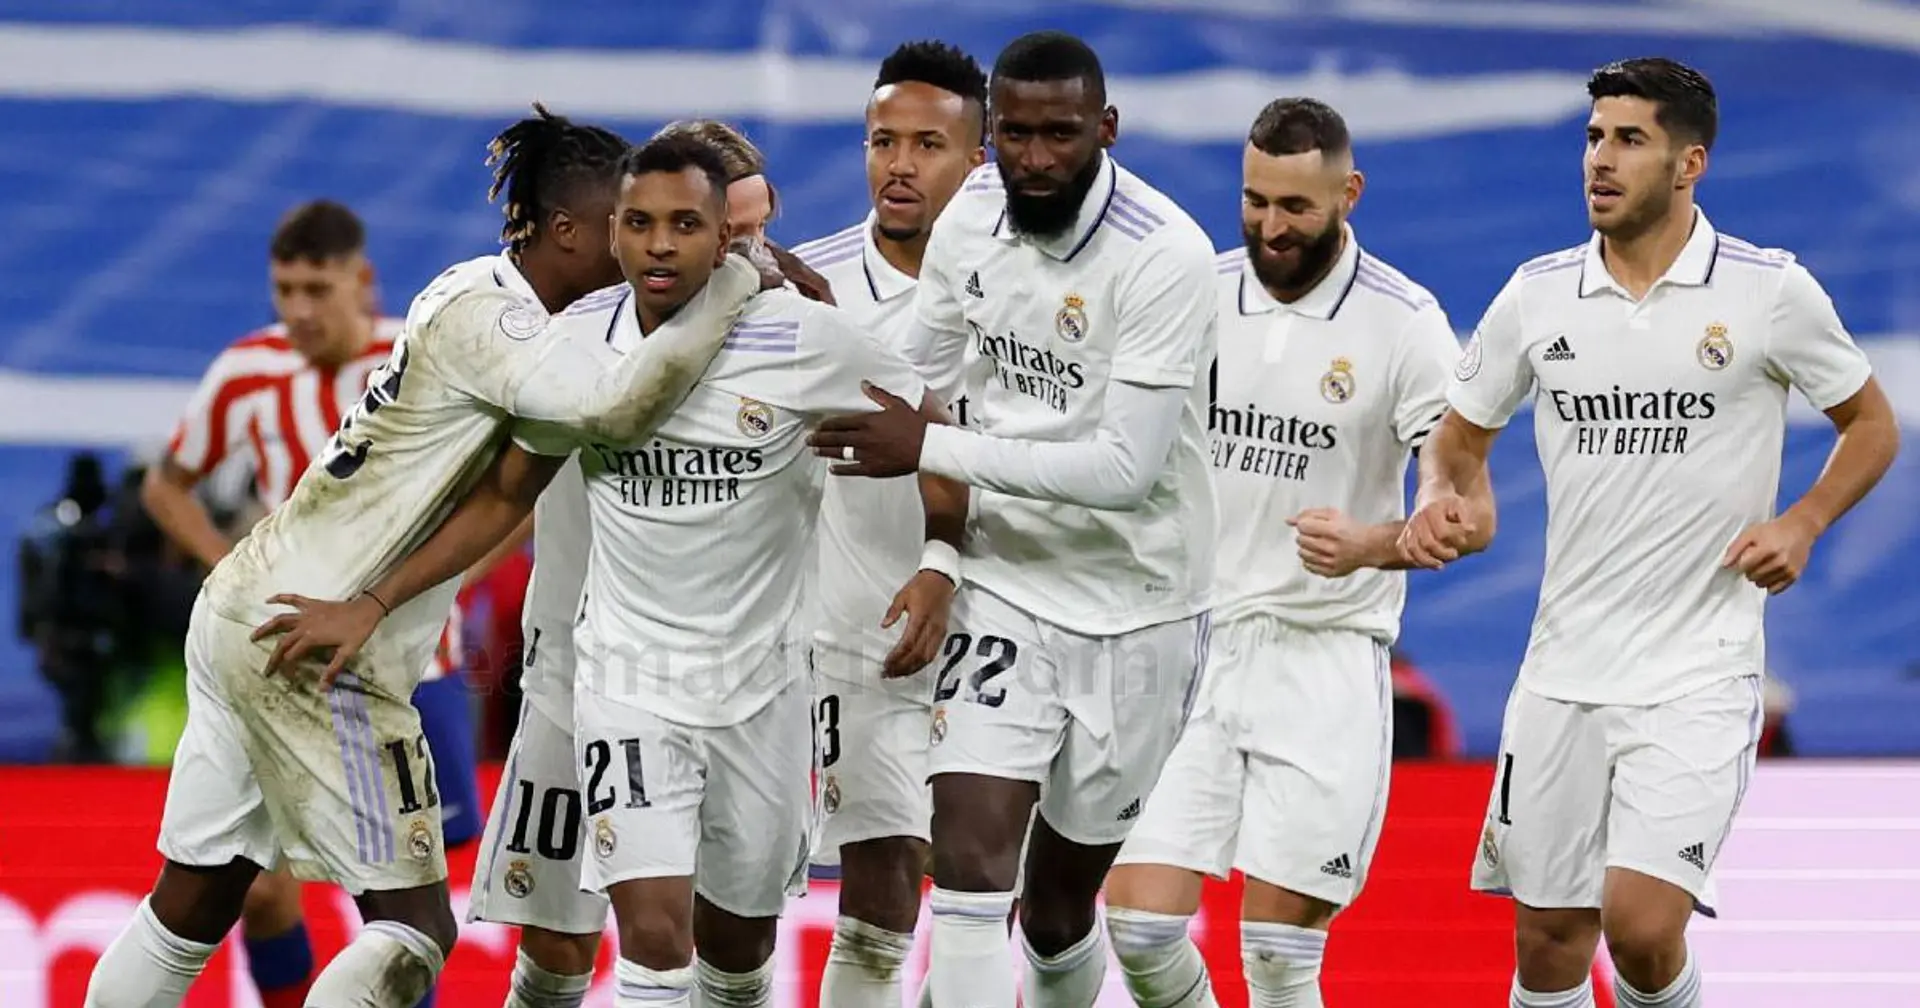 Camavinga 9, Nacho 4 : notes des joueurs du Real Madrid après la victoire contre l'Atletico